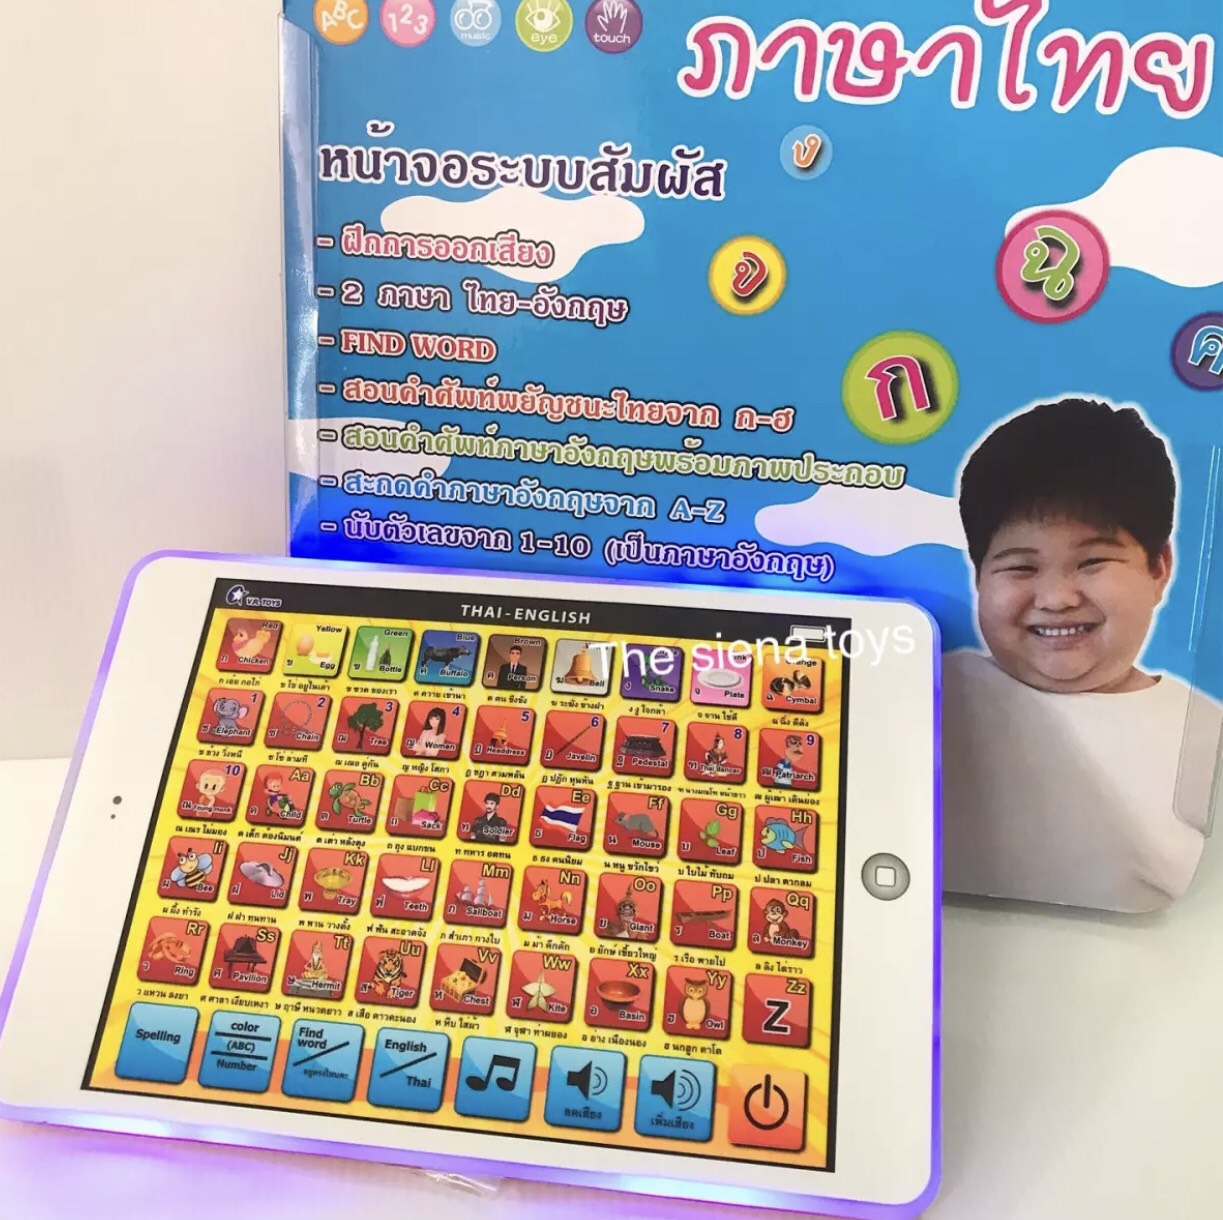 แท็บเล็ต มินิแท็ปเล็ตมีเพลง เสริมการเรียนรู้ภาษาไทยและภาษาอังกฤษ หน้าจอระบบสัมผัส (สินค้าถ่ายจากของจริง100%)